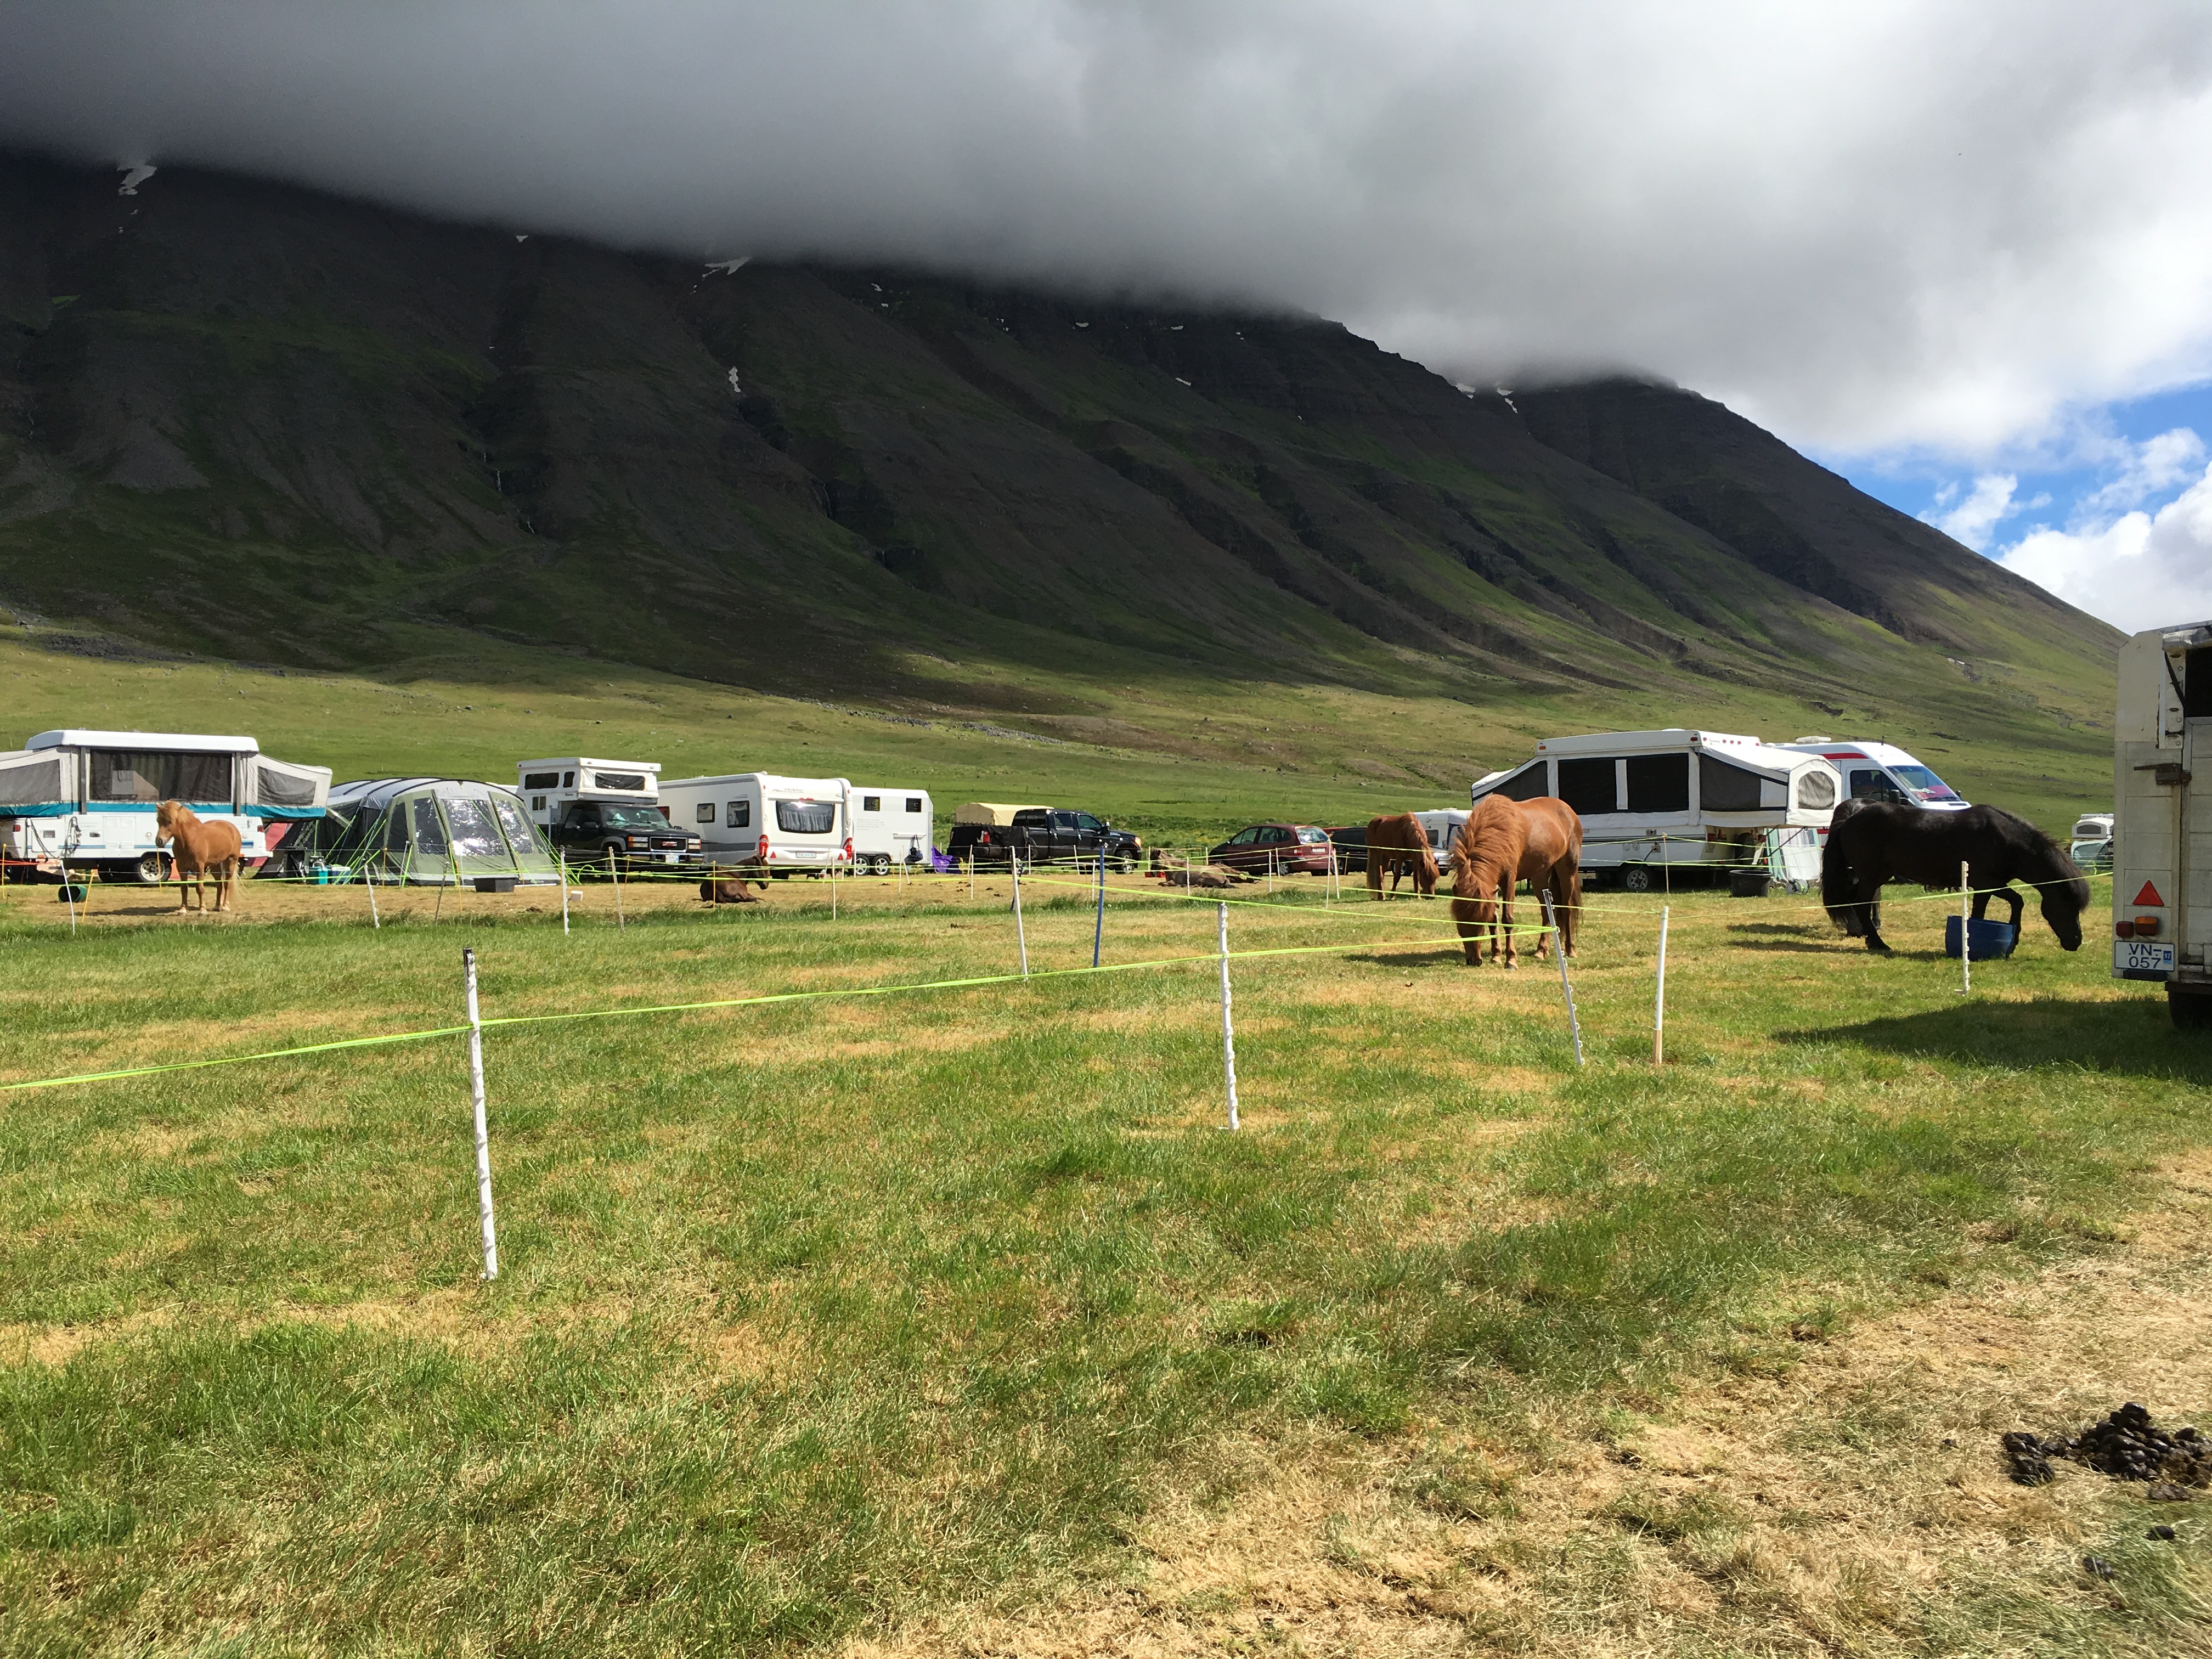 Hästar, bilar och tält Foto: Ishestnews.se